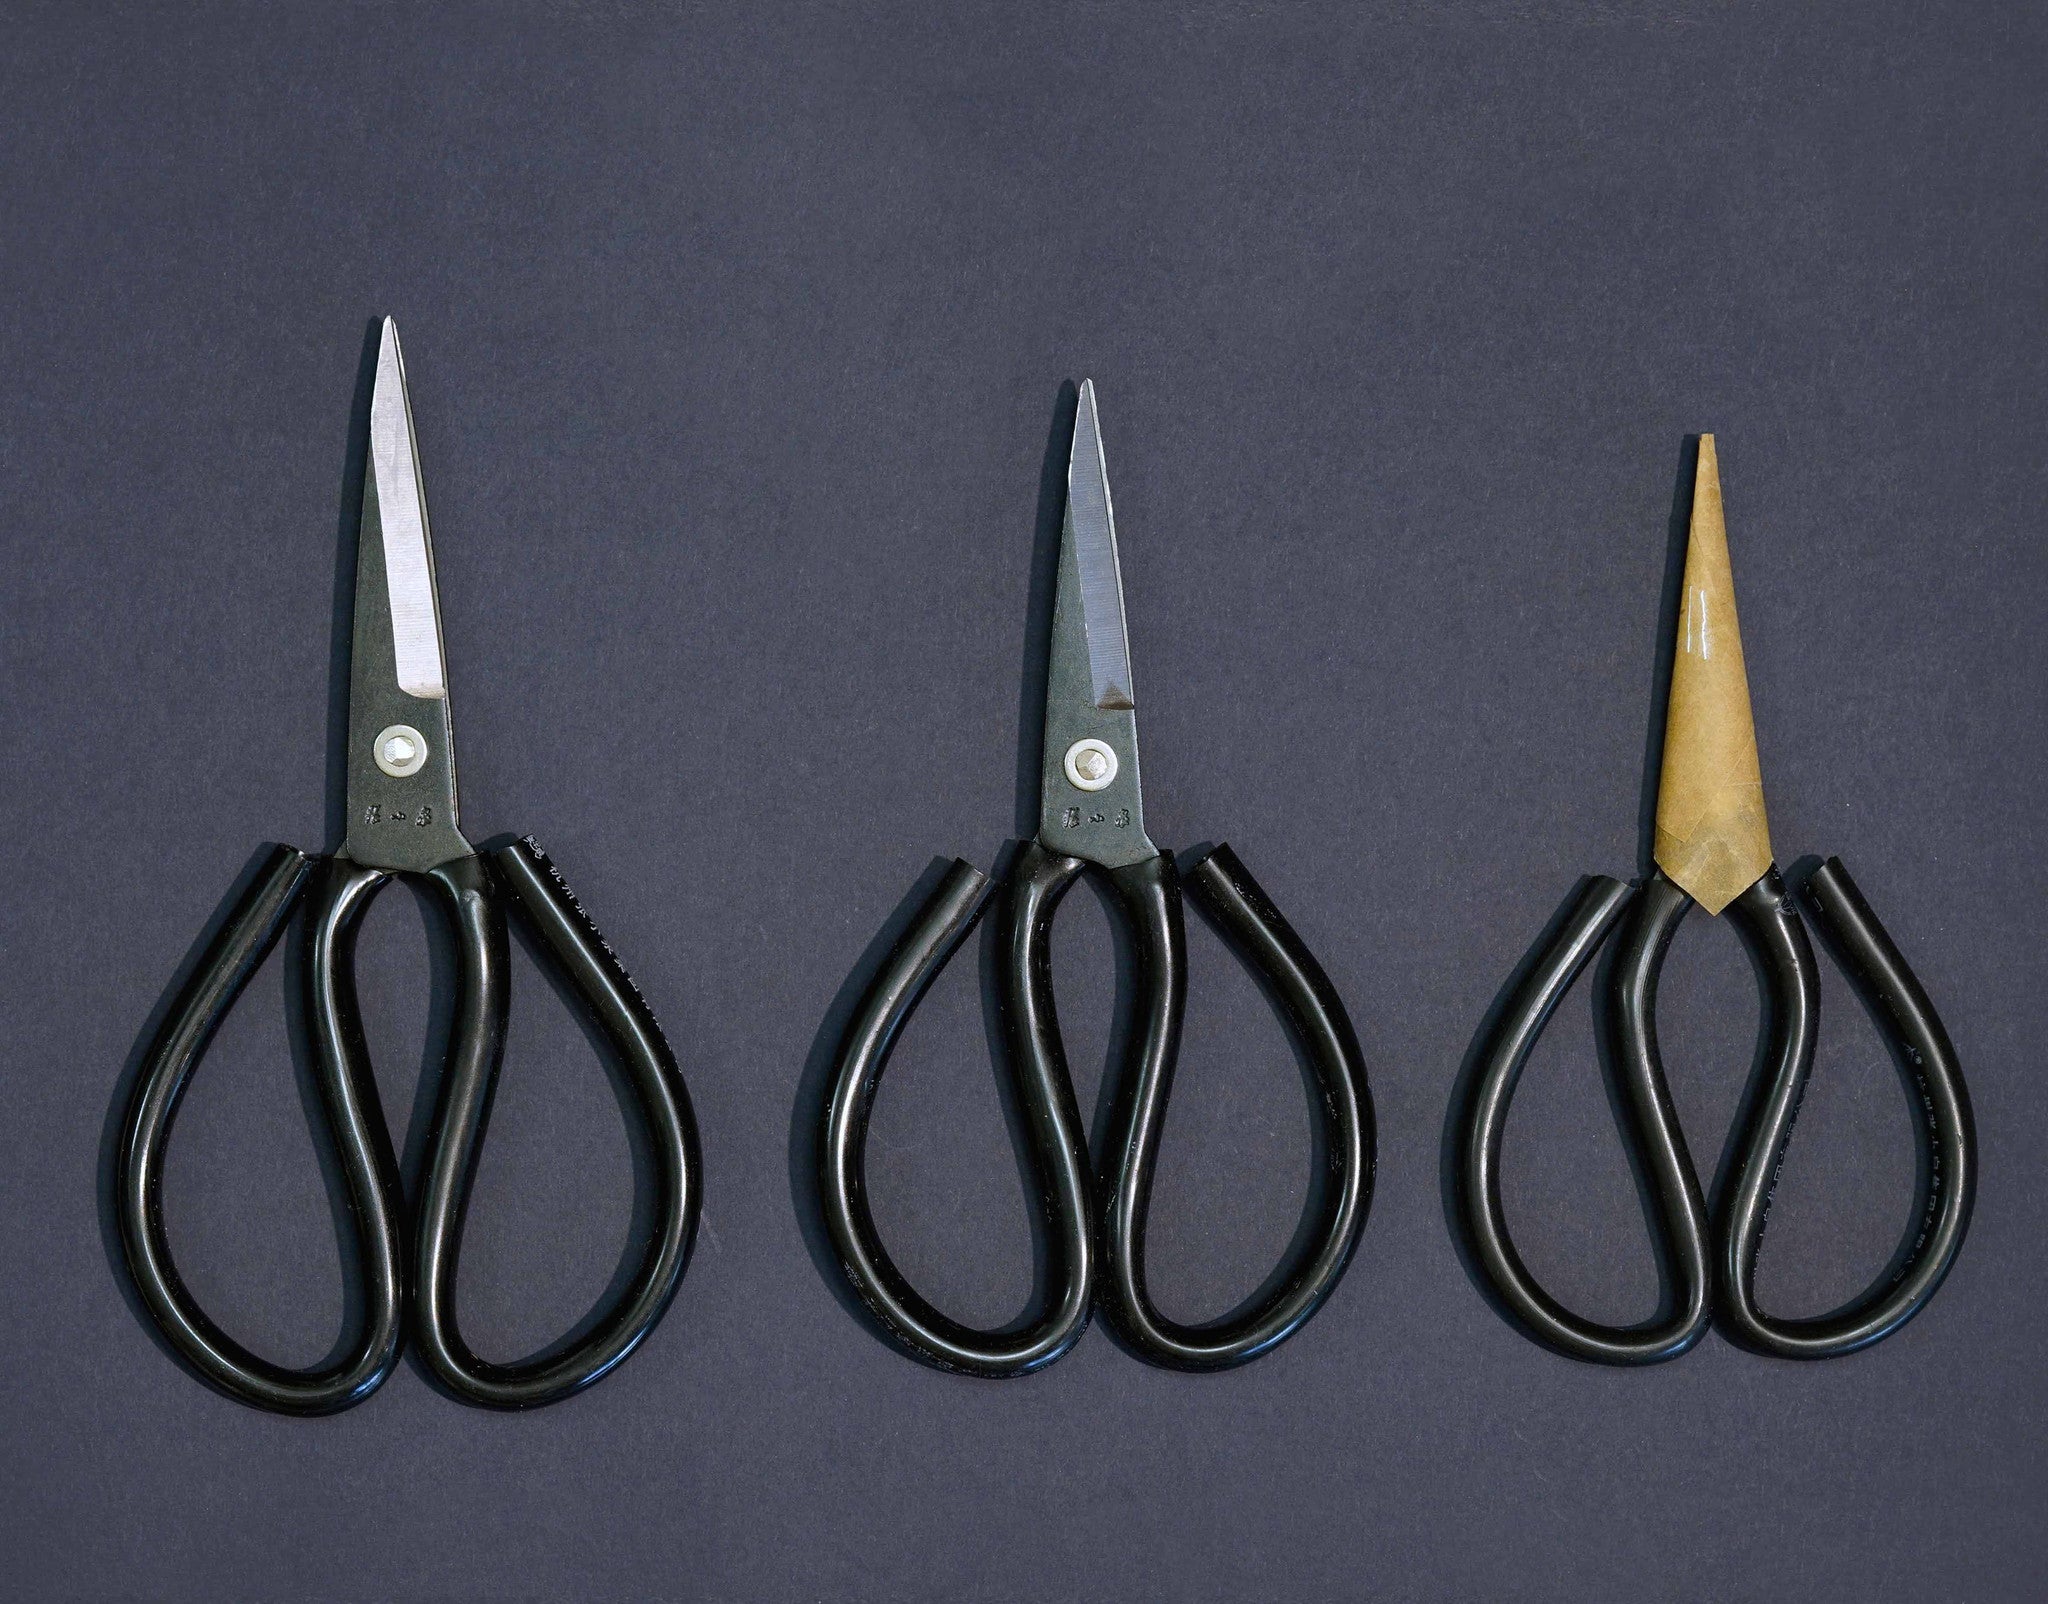 Chinese Scissors